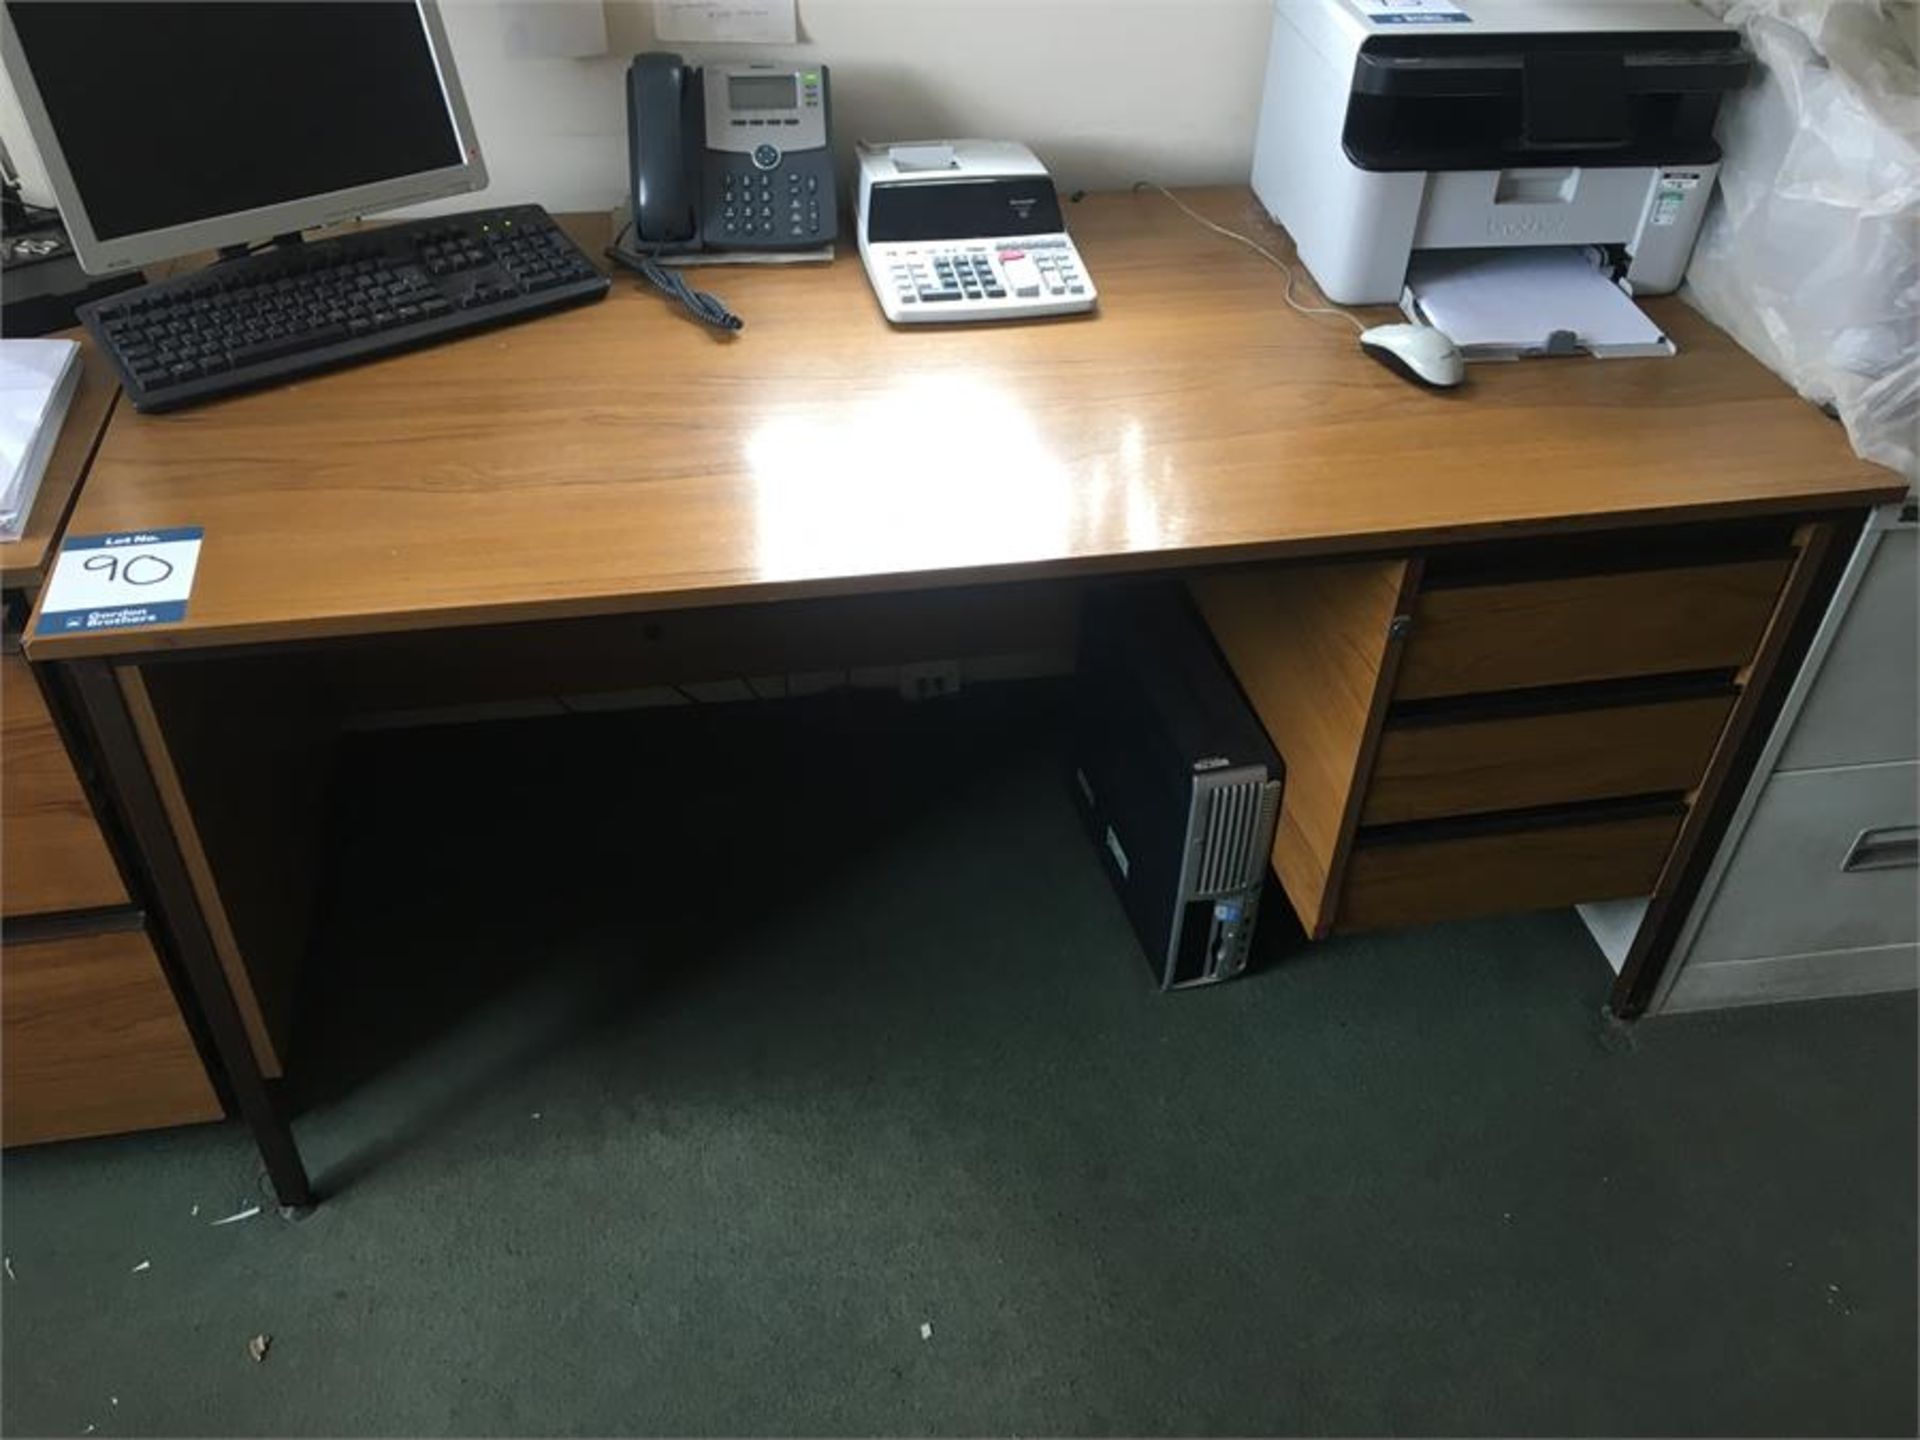 Dark oak effect single pedestal desk, approx. 1,530mm x 750mm x 730mm (Contents of desk not